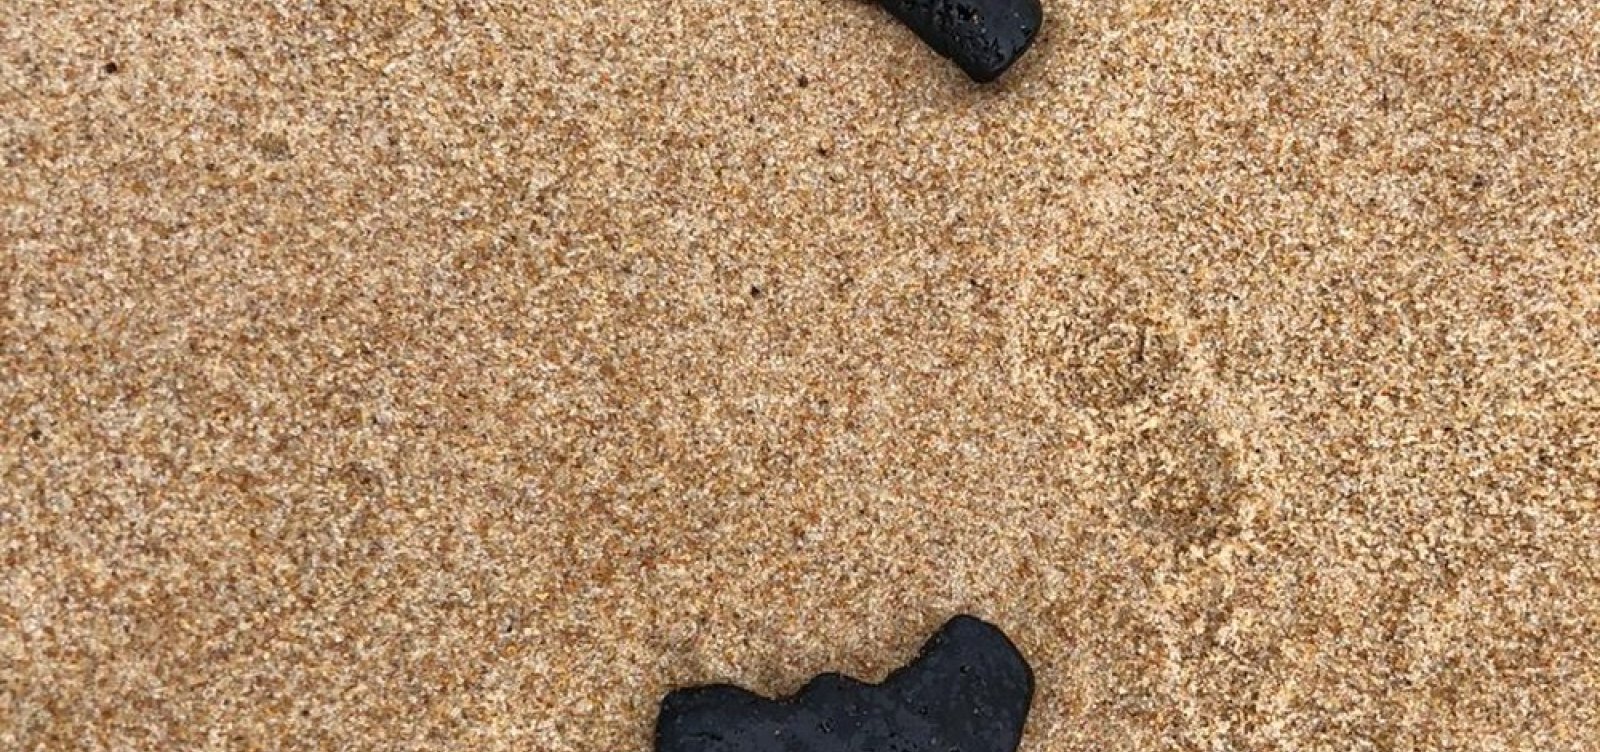 Manchas de óleo são encontradas em praia de Camaçari